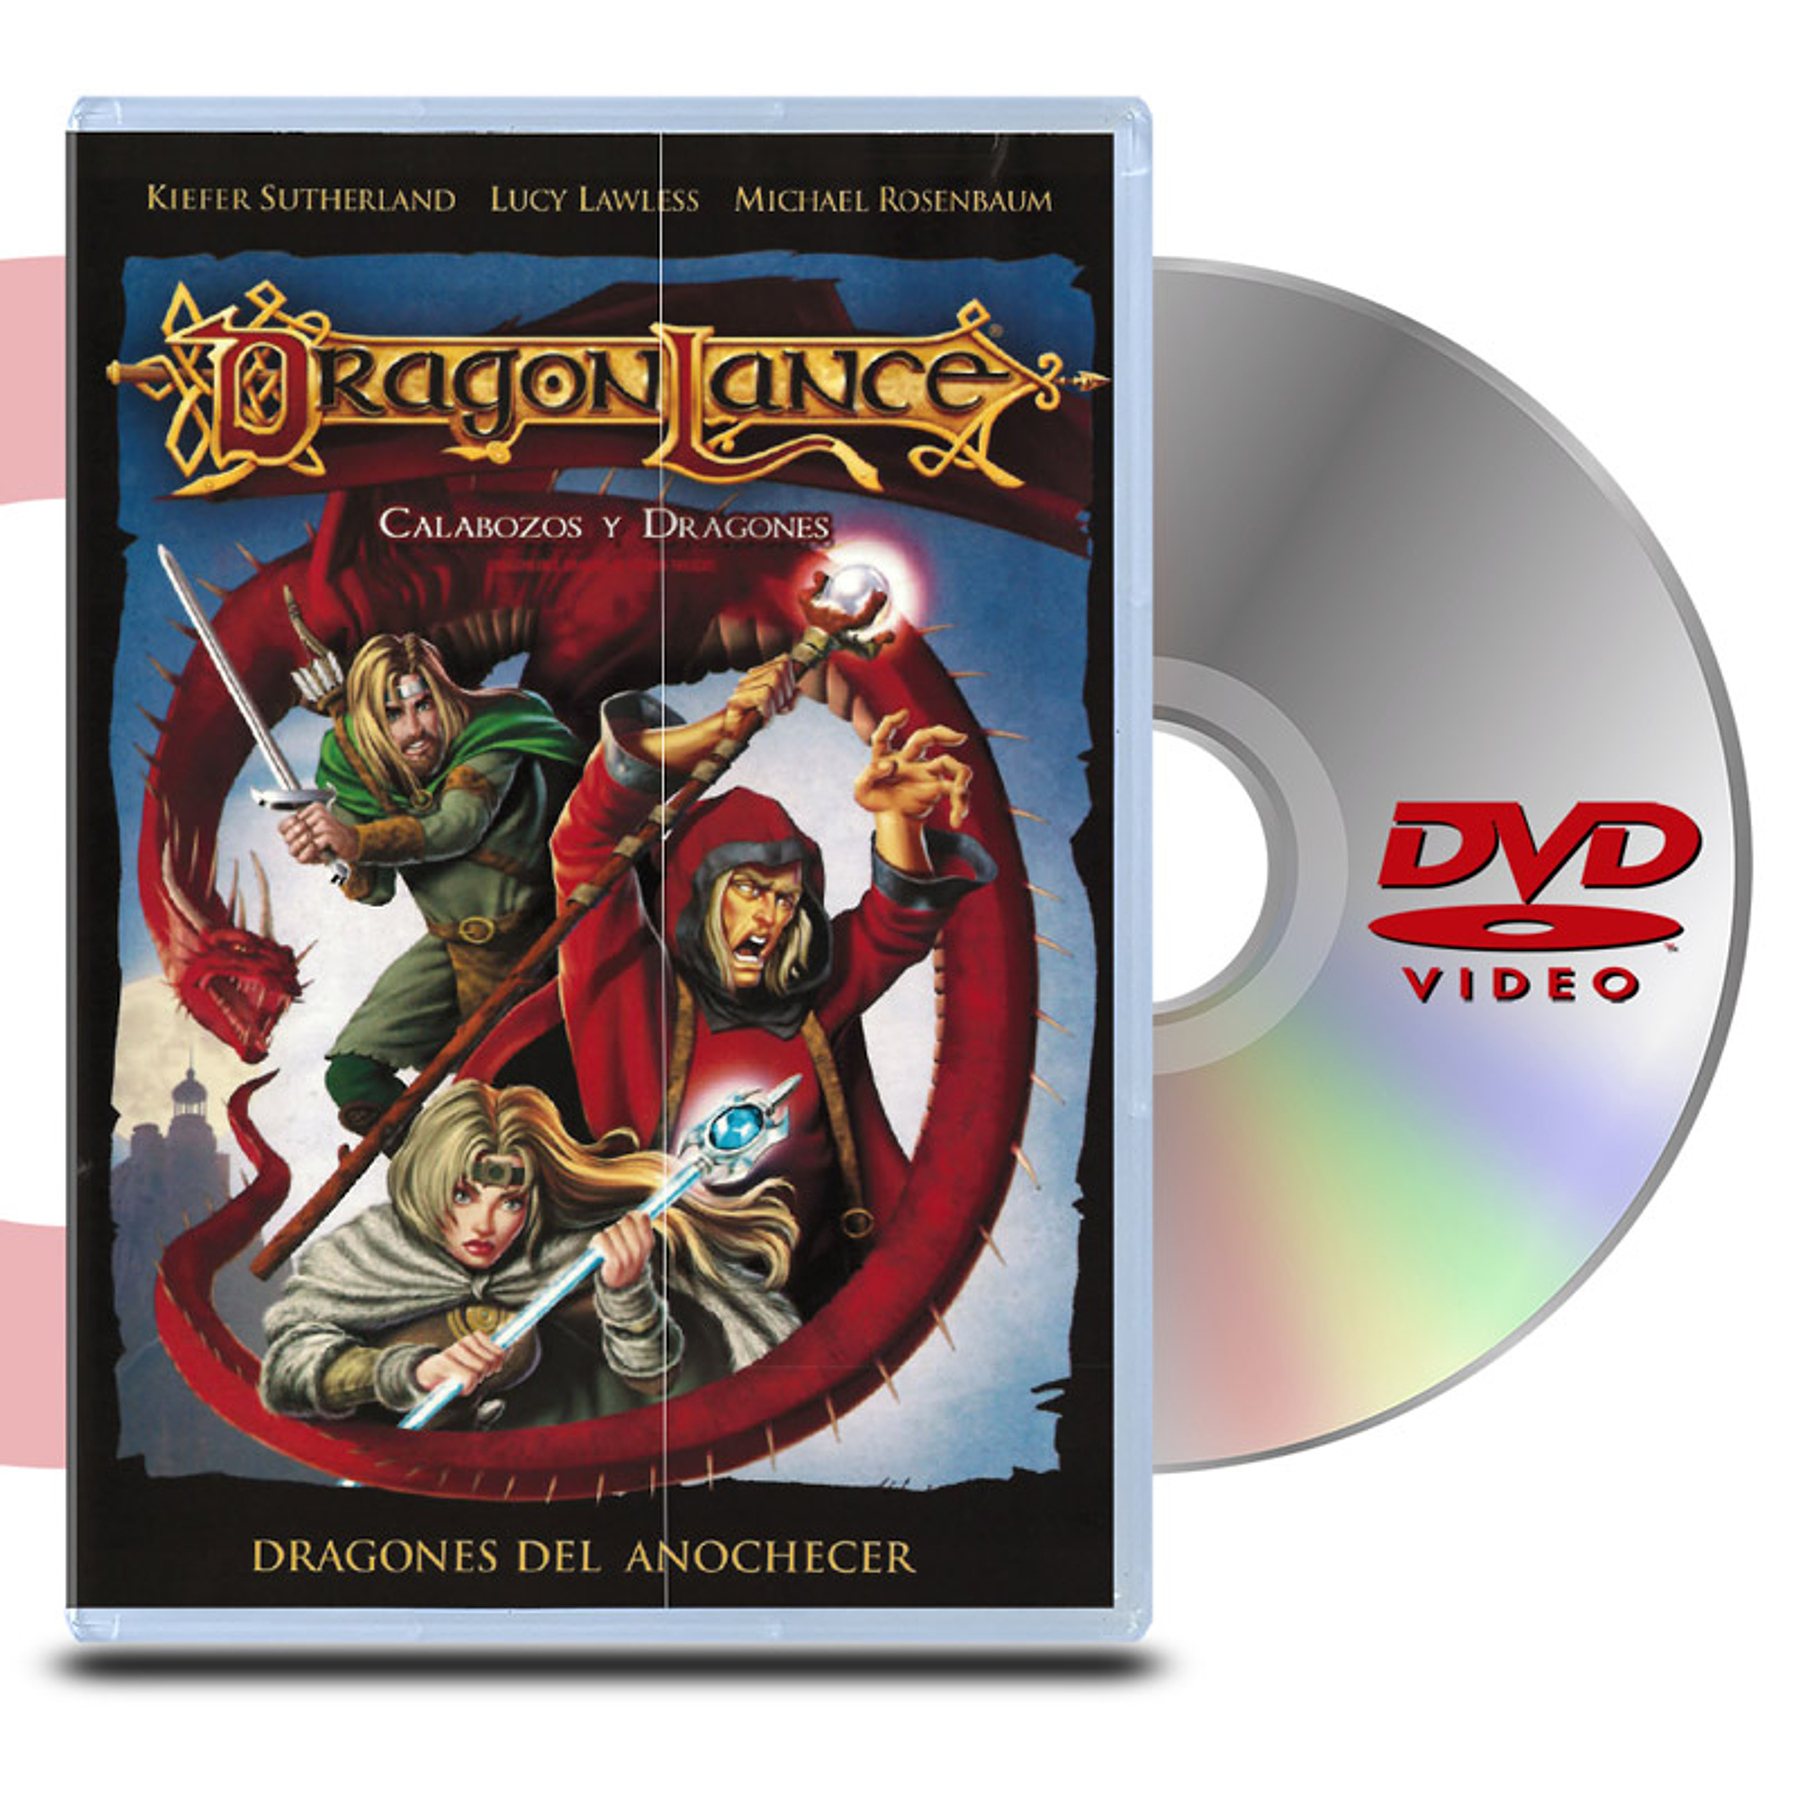 DVD DRAGONLANCE: CALABOZOS Y DRAGONES